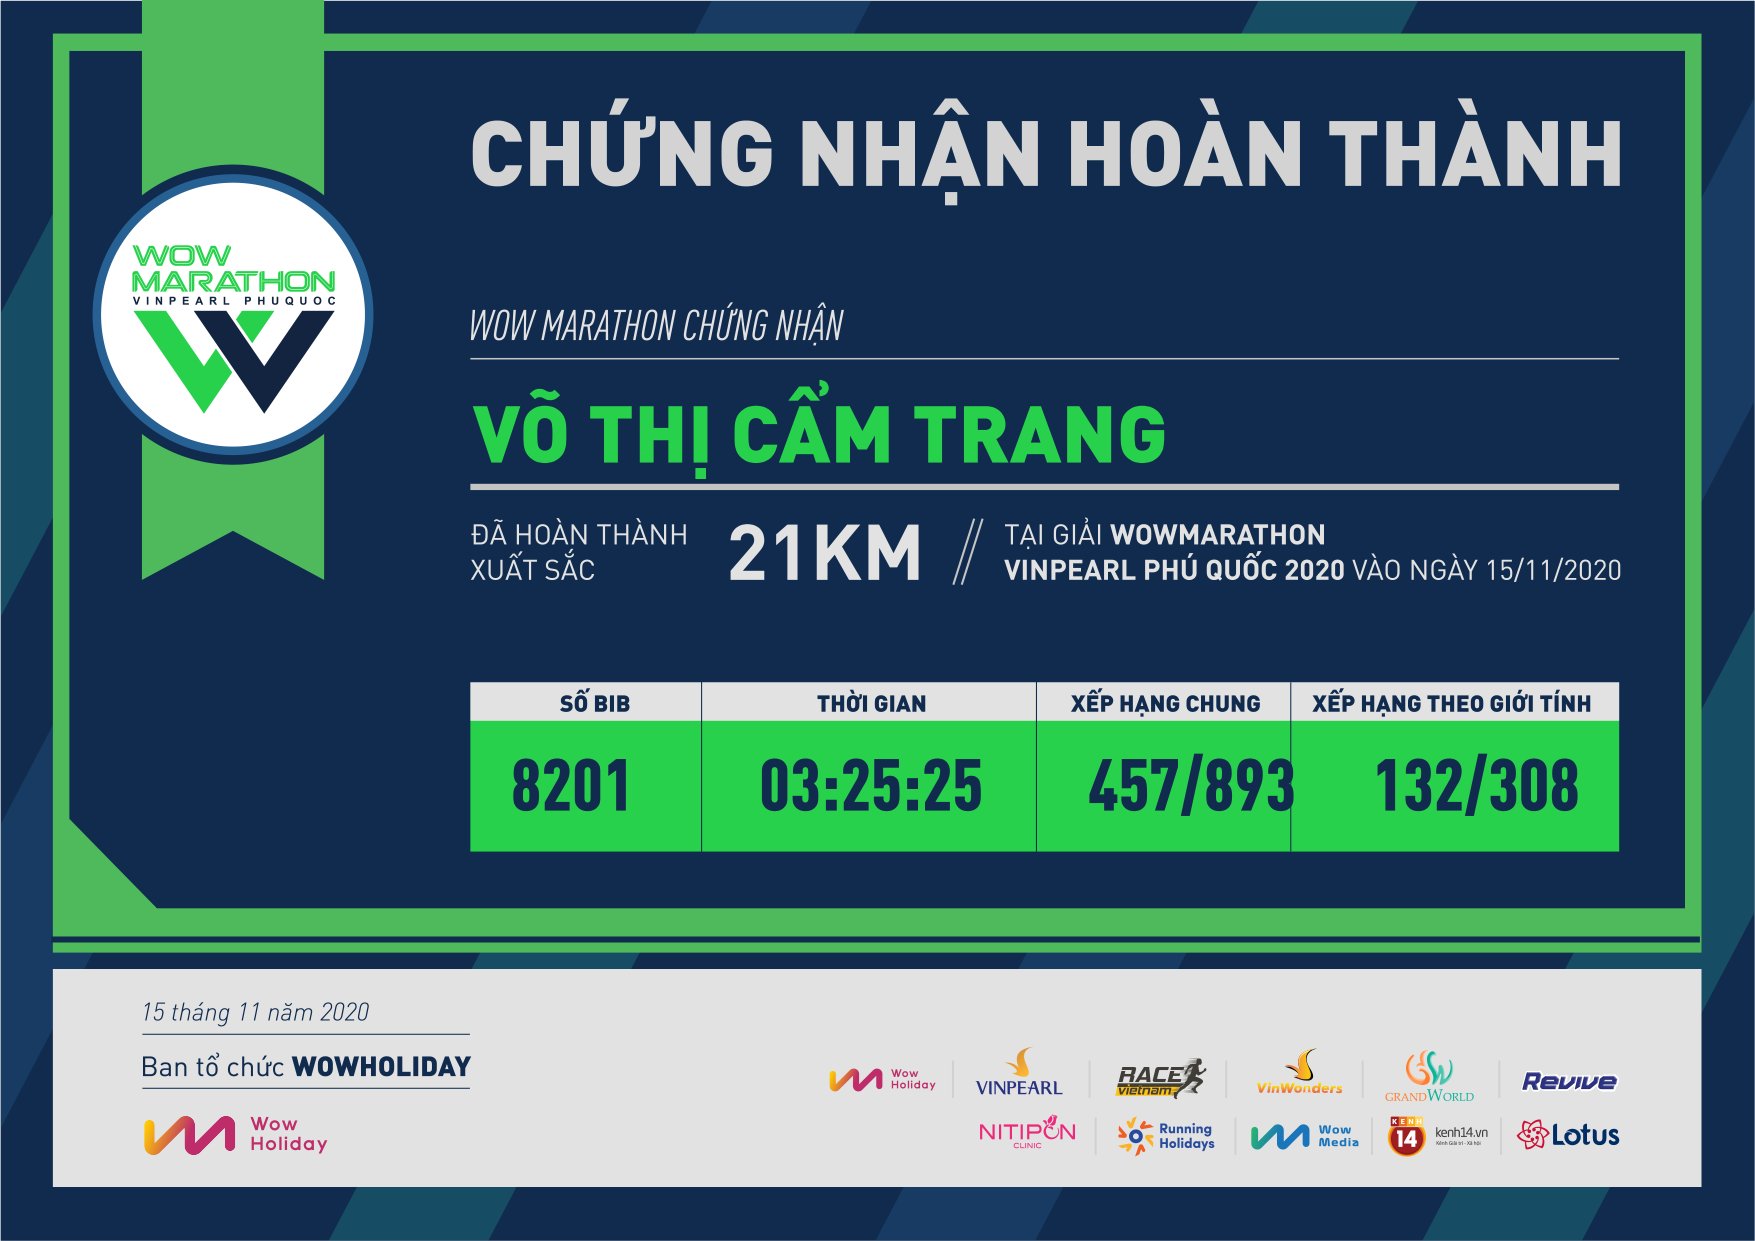 8201 - Võ Thị Cẩm Trang